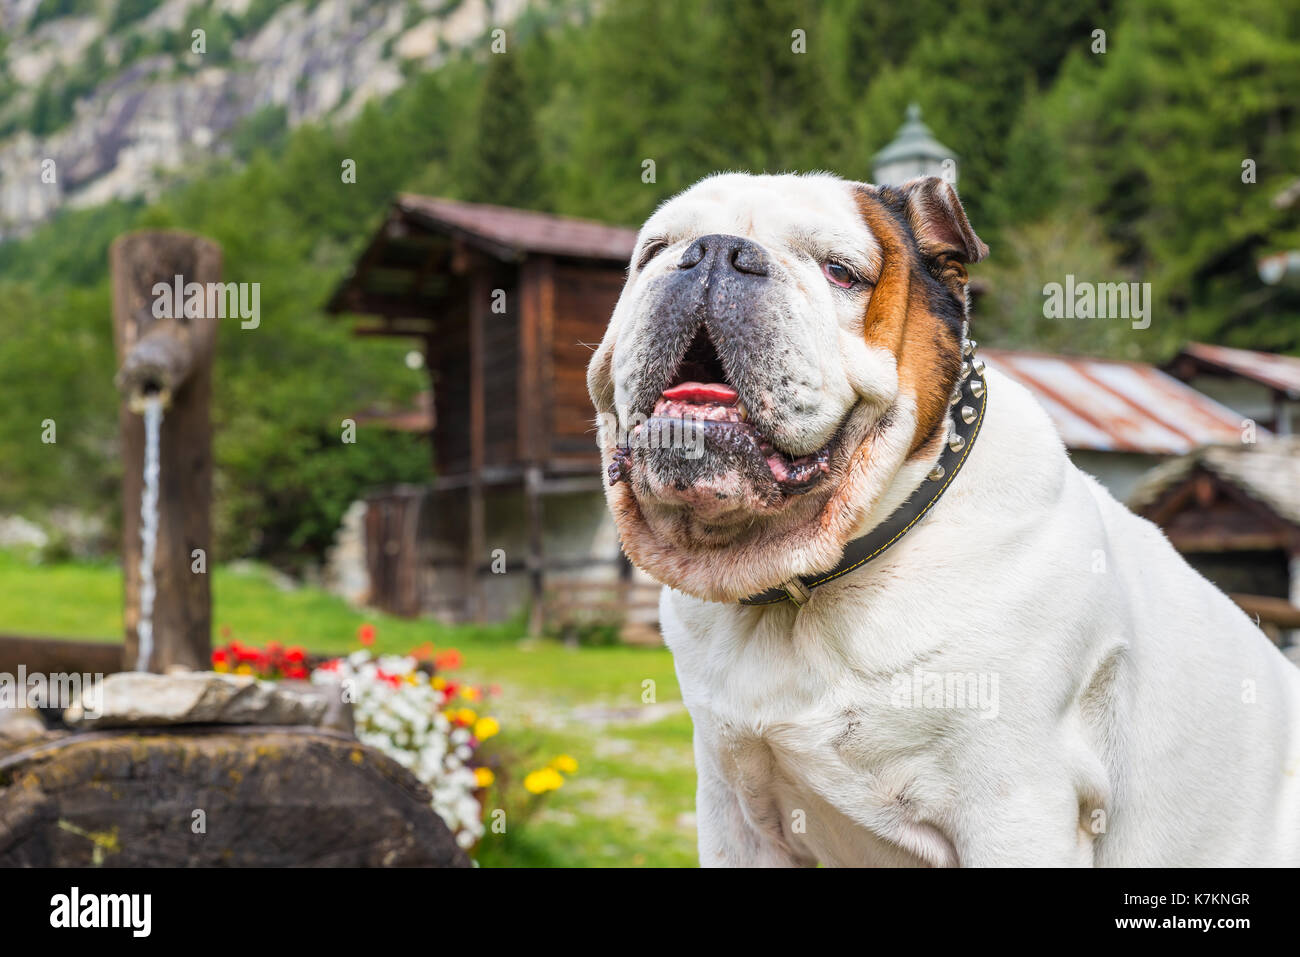 Bulldog Anglais blanc. Gros plan d'une bulldog dans la montagne ; dans l'arrière-plan, des huttes, une fontaine typique et de fleurs colorées Banque D'Images